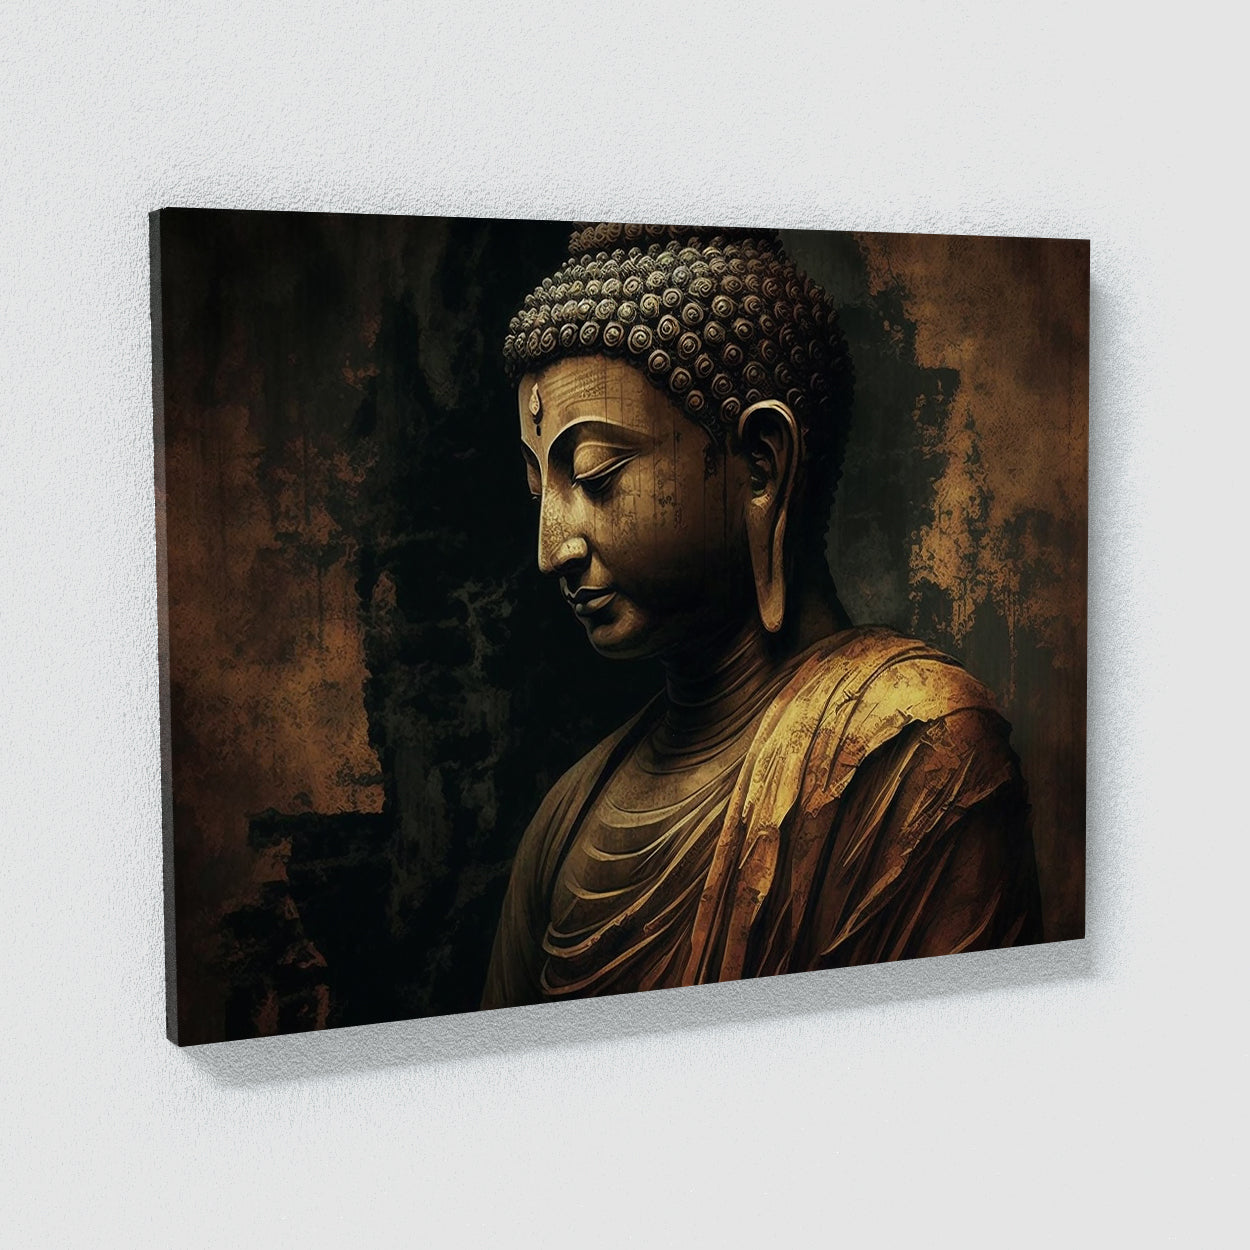 Buddha Wall Art, Buddha Canvas Painting